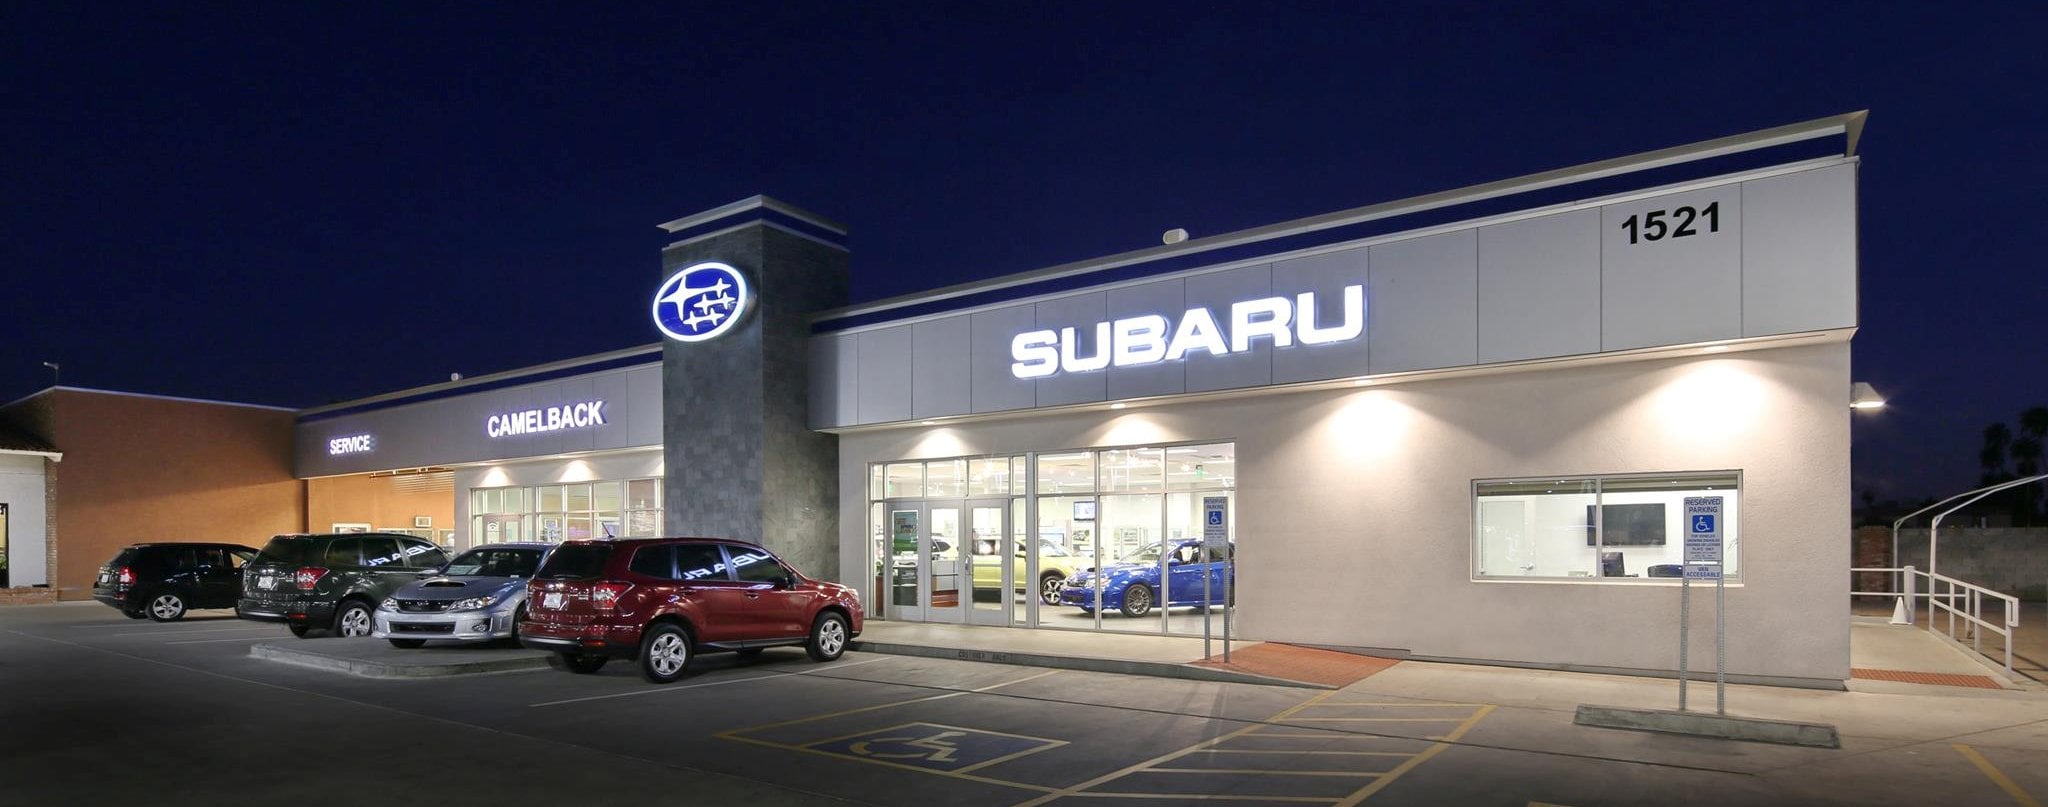 Camelback Subaru Dealership in Phoenix Arizona